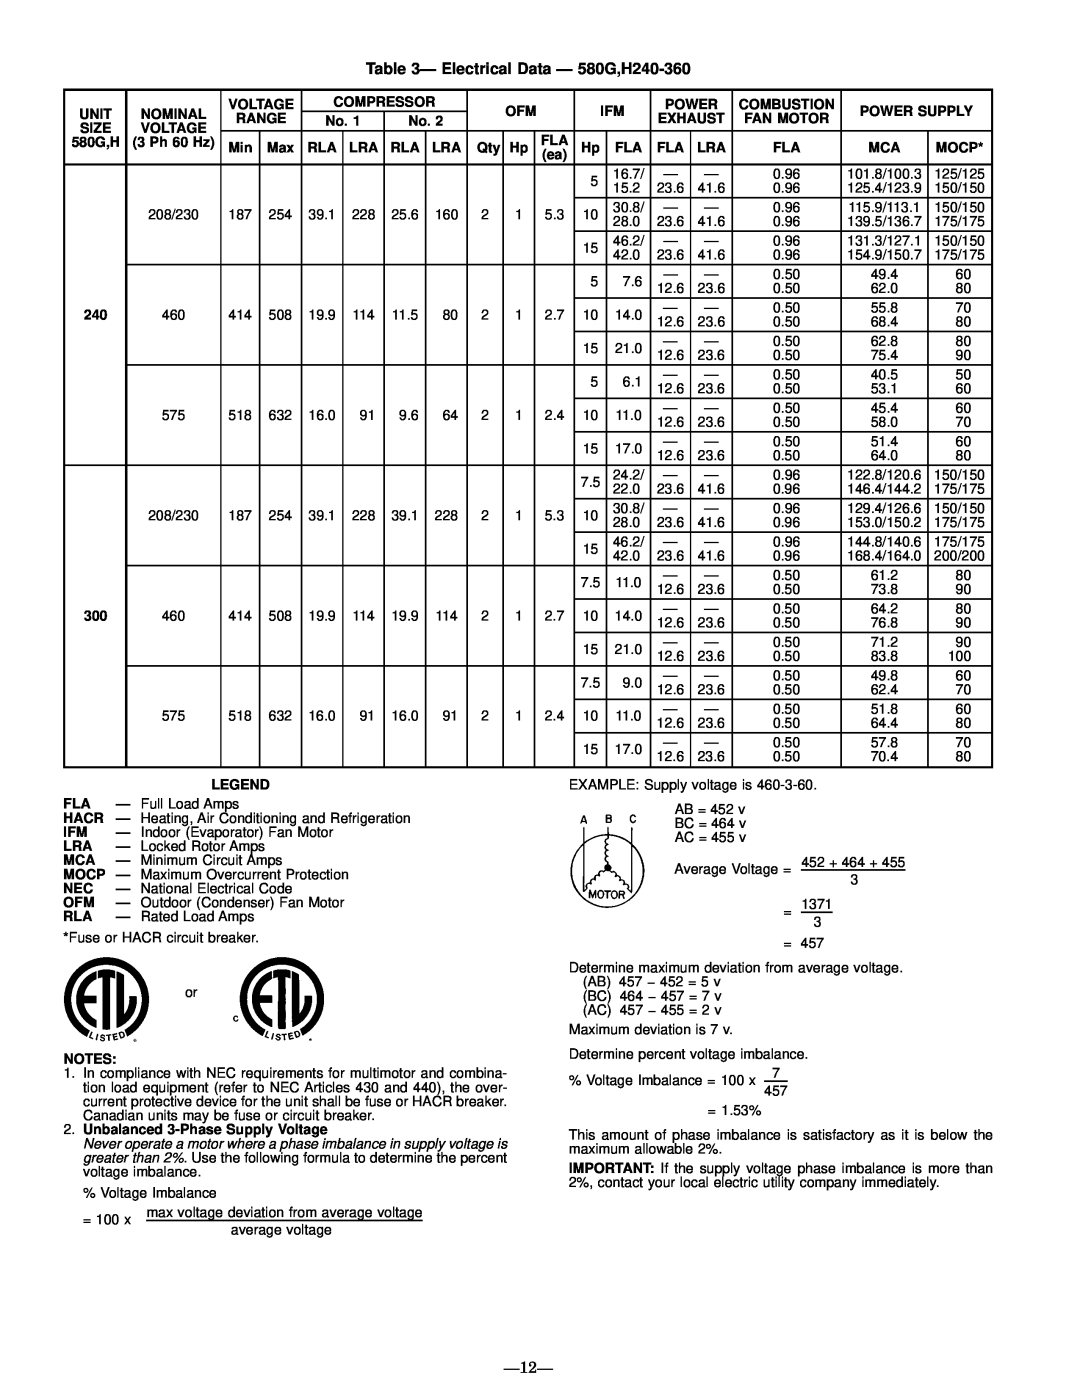 Bryant manual Ð Electrical Data Ð 580G,H240-360, Ð12Ð 